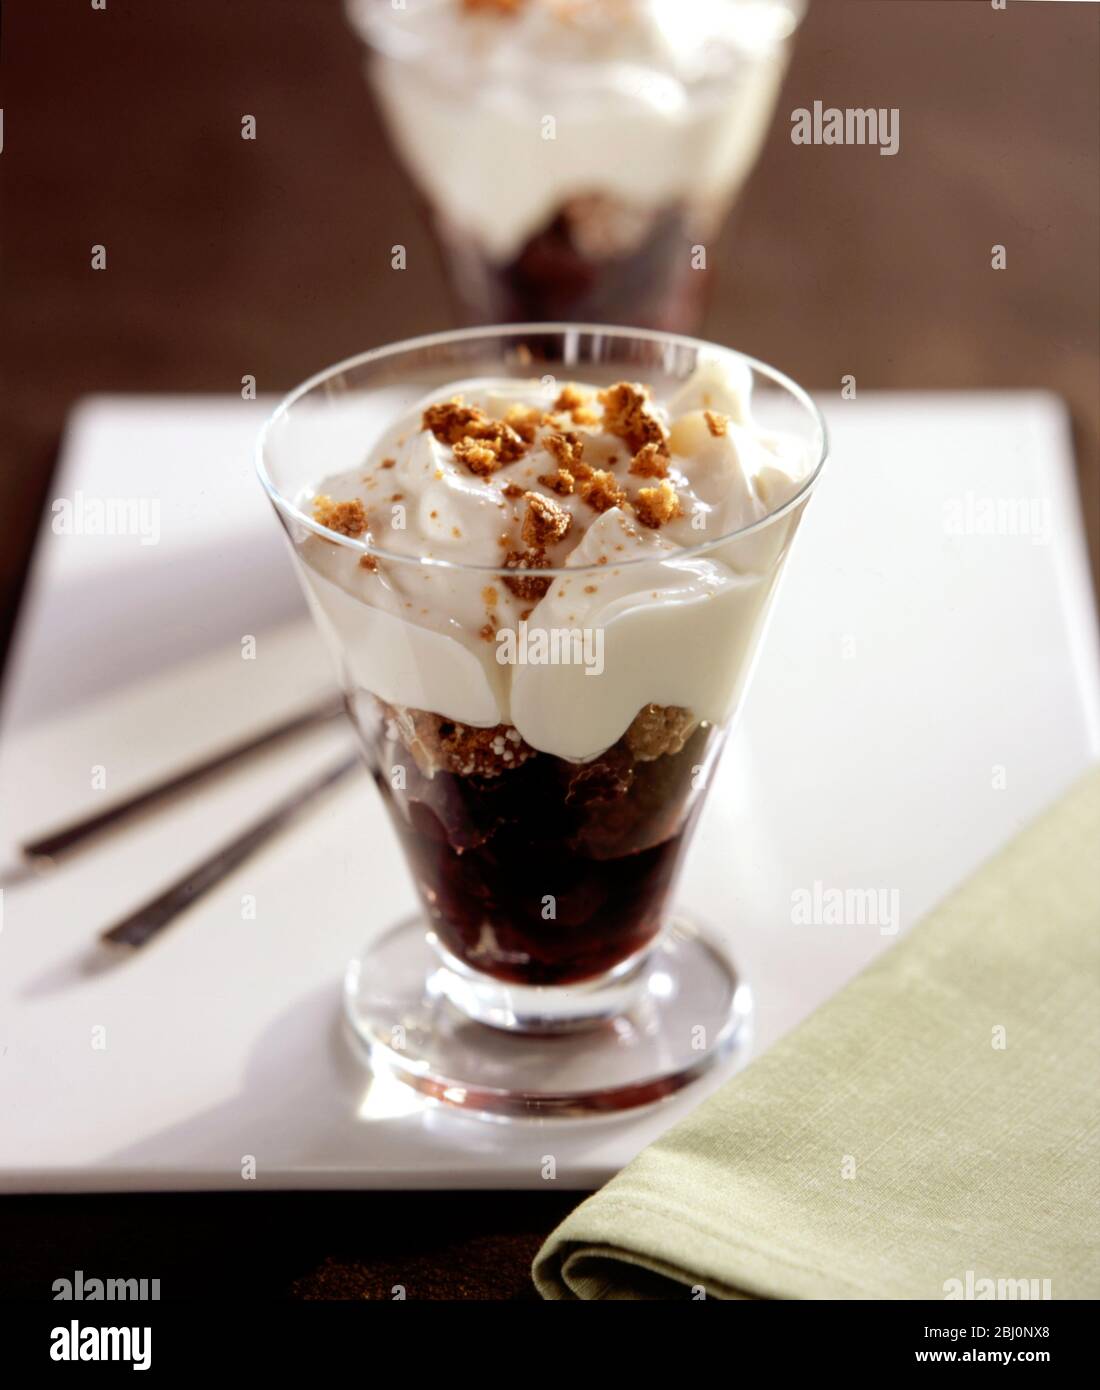 Reichhaltiges Dessert aus Sahne Schokolade und Biskuitkuchen im Glas - Stockfoto